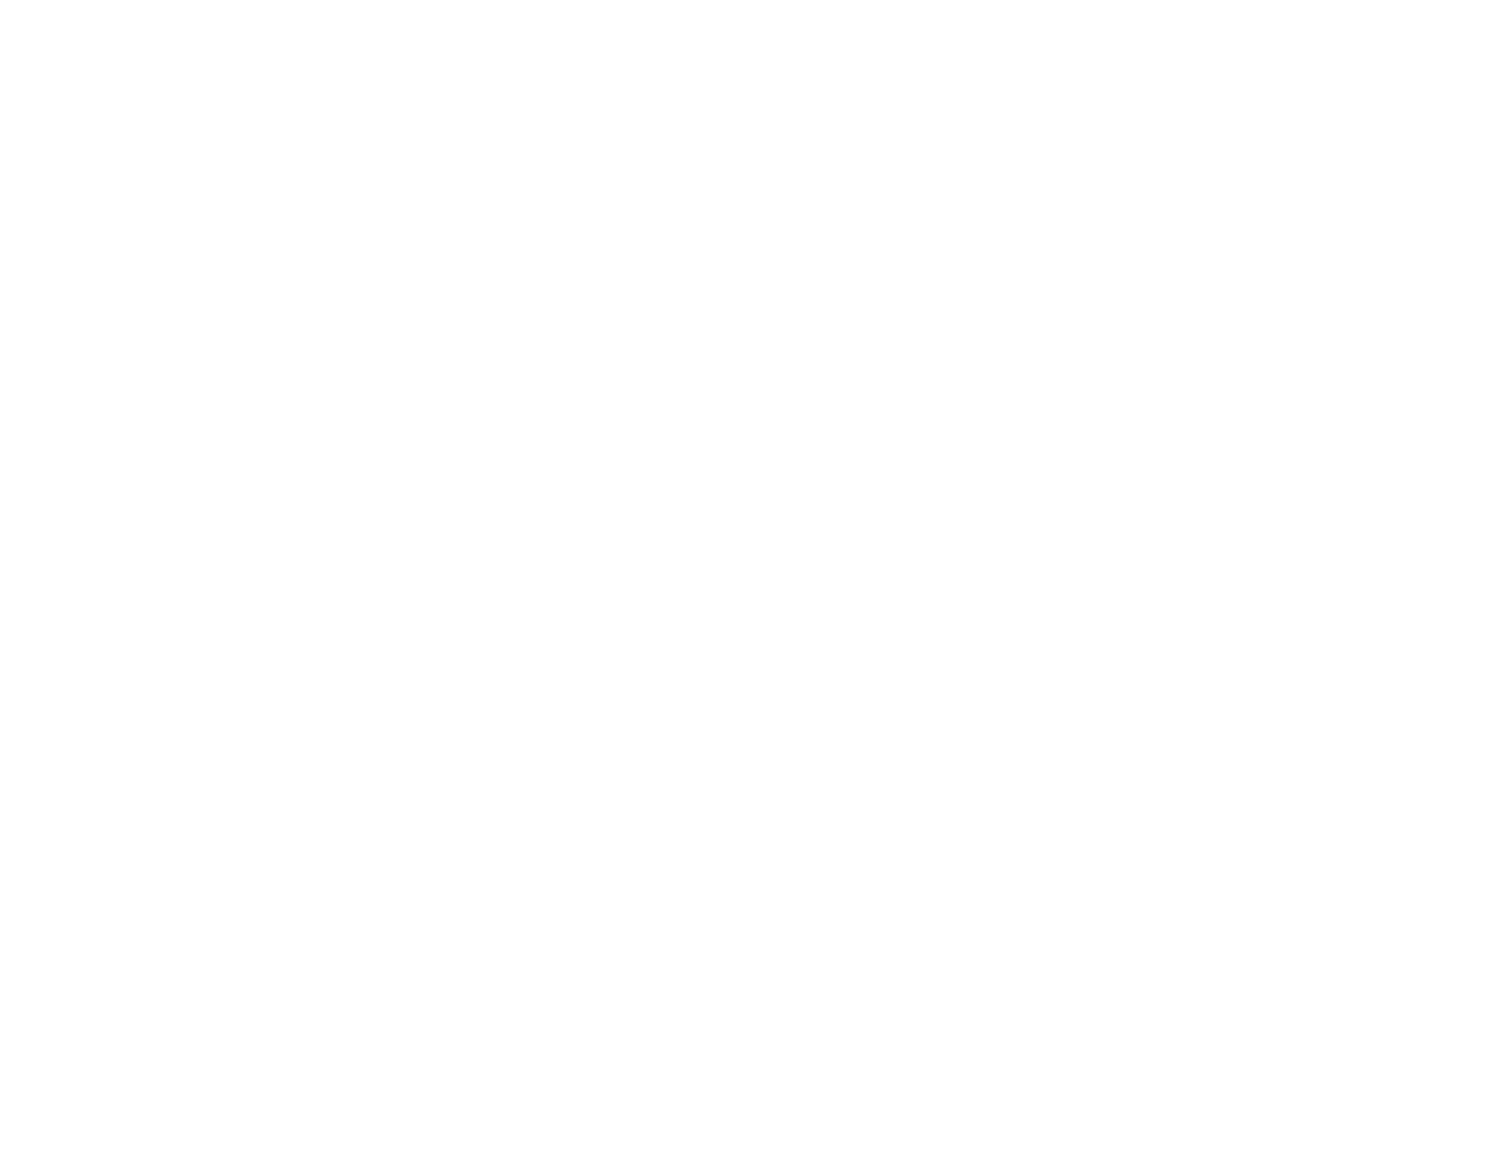 AlethalWeaponArt